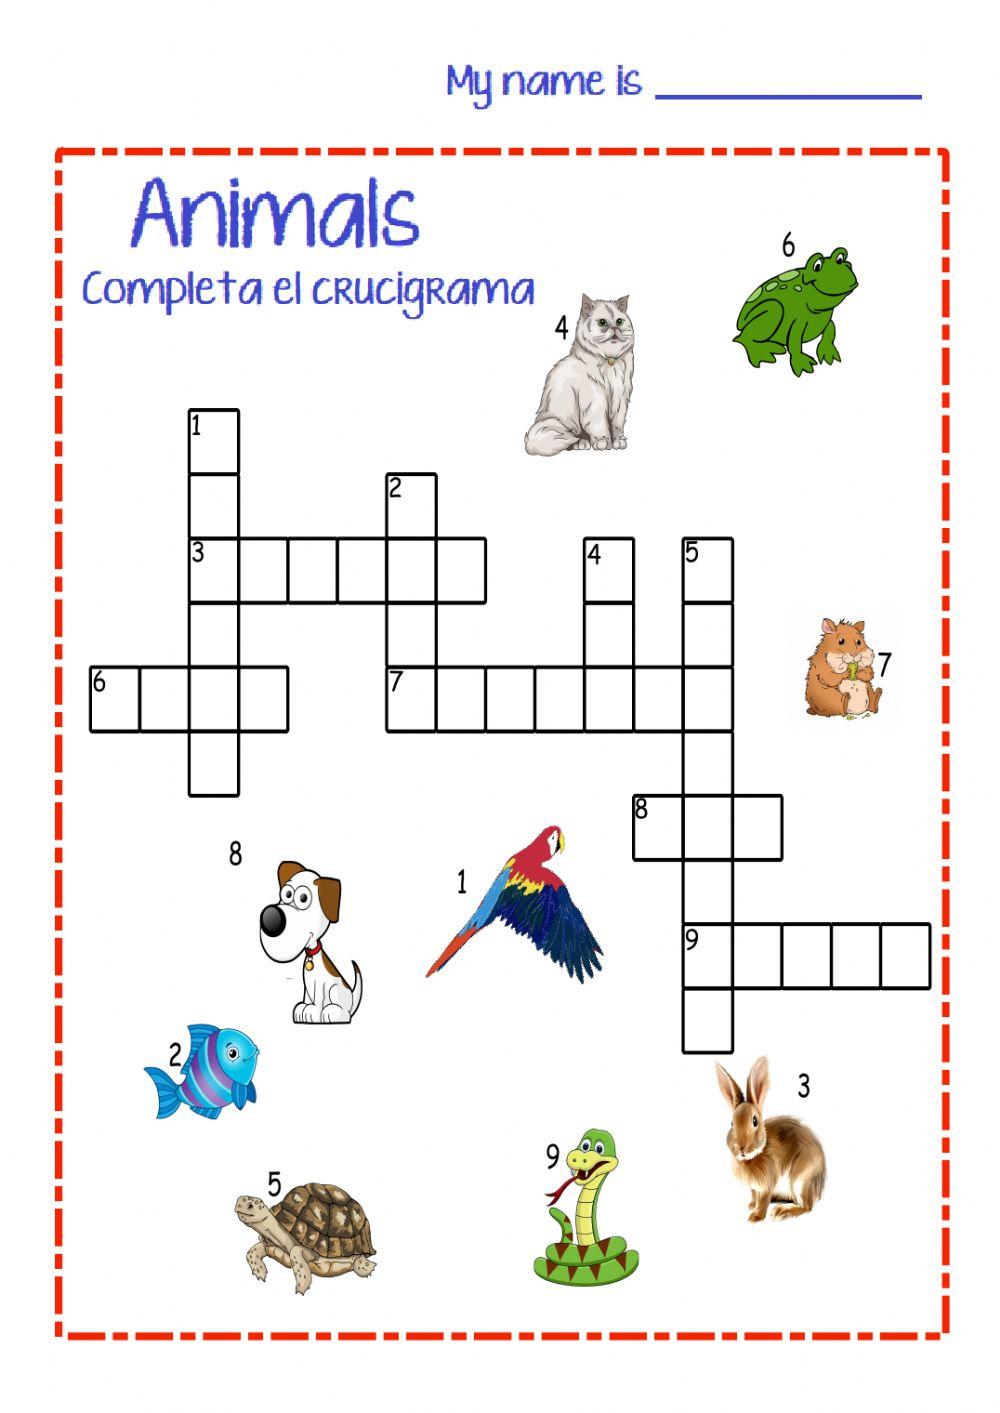 Pets crossword